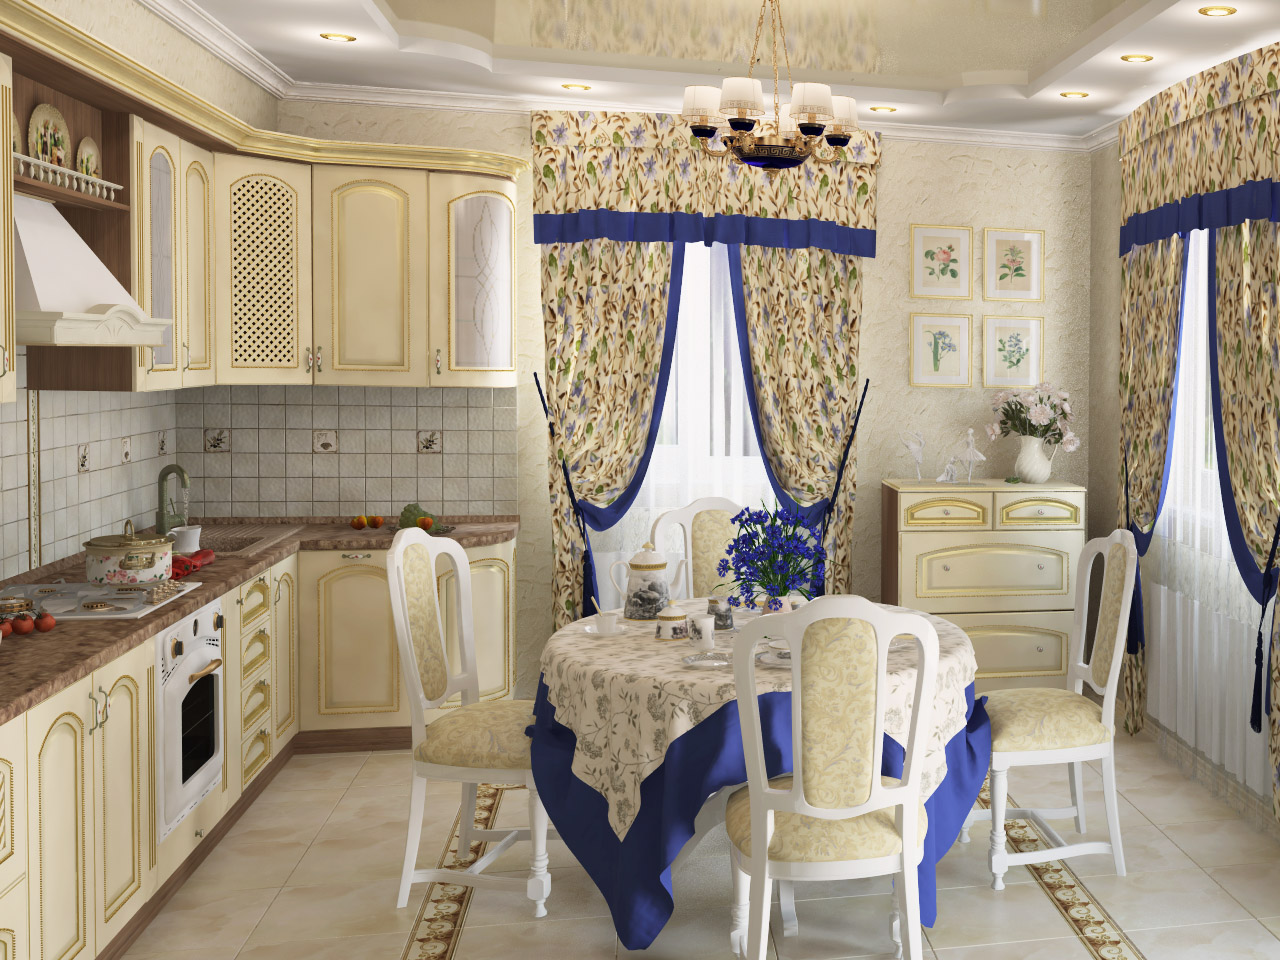 Rideaux en tissu naturel dans la décoration de la maison dans le style de la Provence